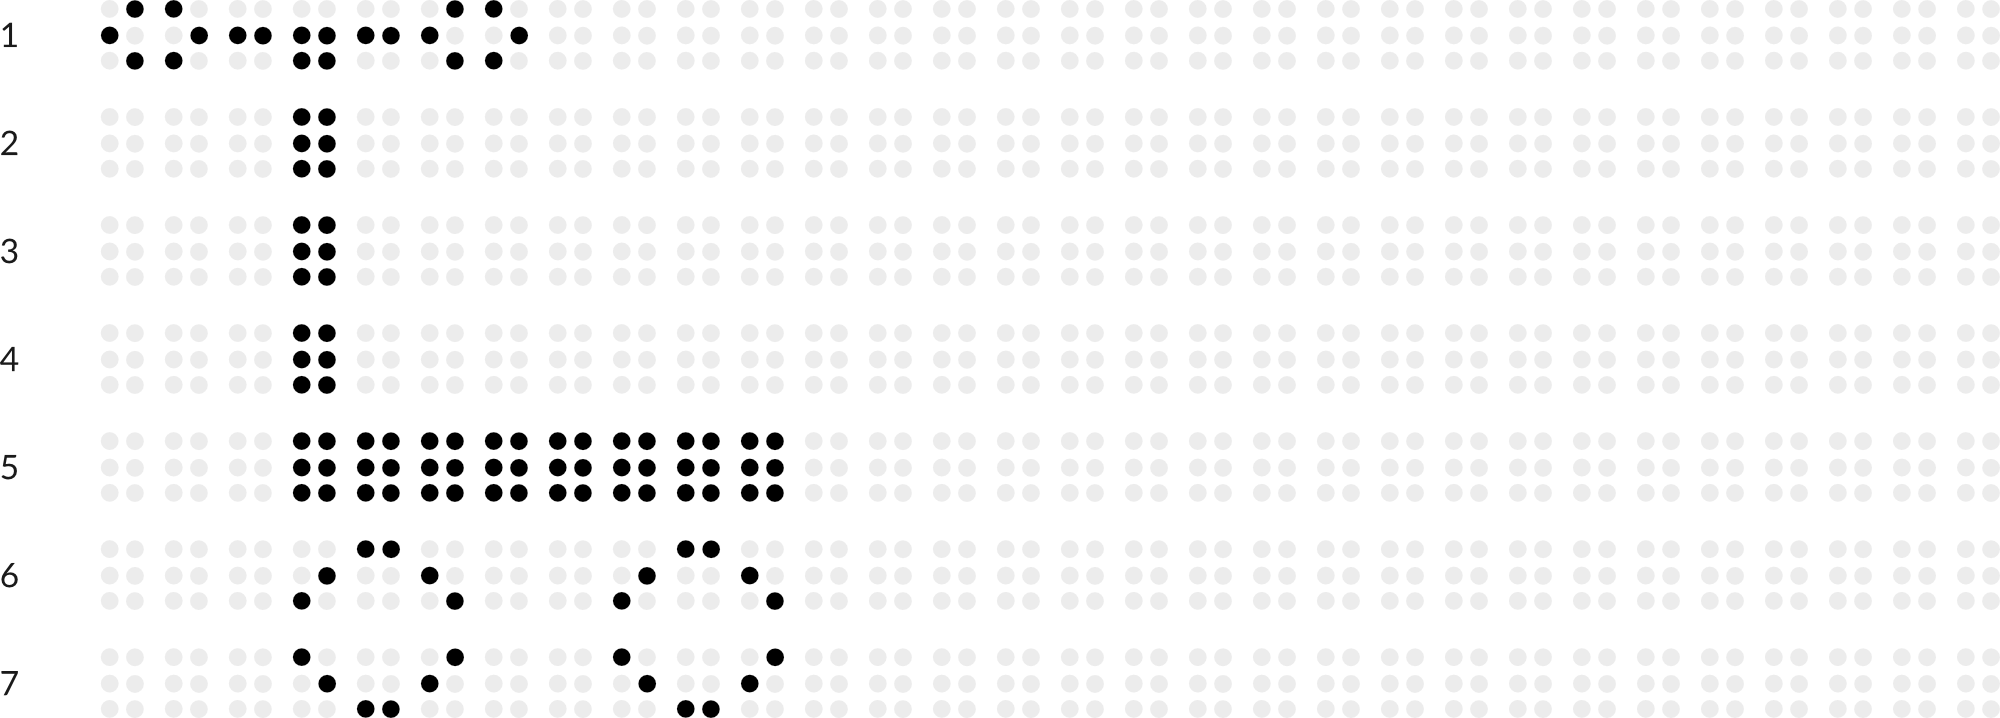 Braillebild mit Raster: Roller